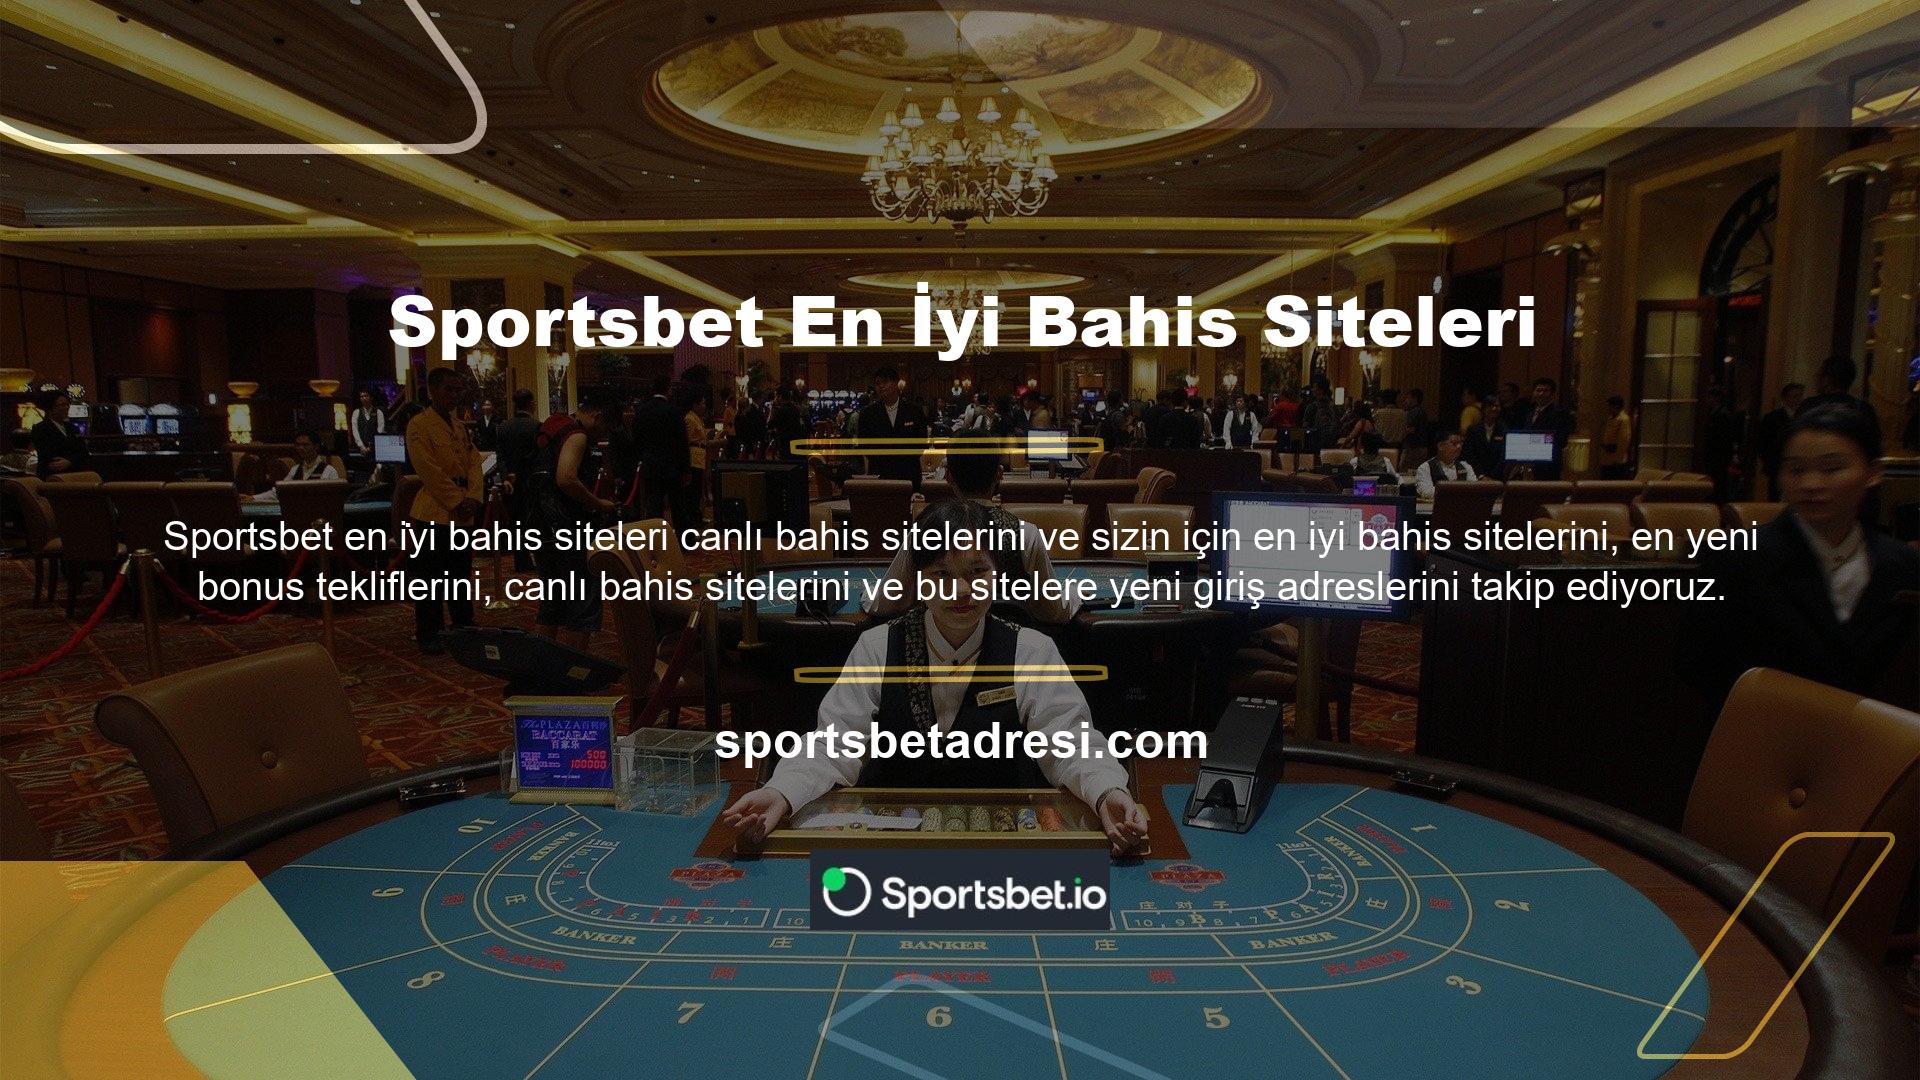 Sportsbet çok sayıda canlı bahis oyunu içeren çevrimiçi bahisçisi, değiştirilmiş bir giriş adresiyle günün 24 saati açıktır